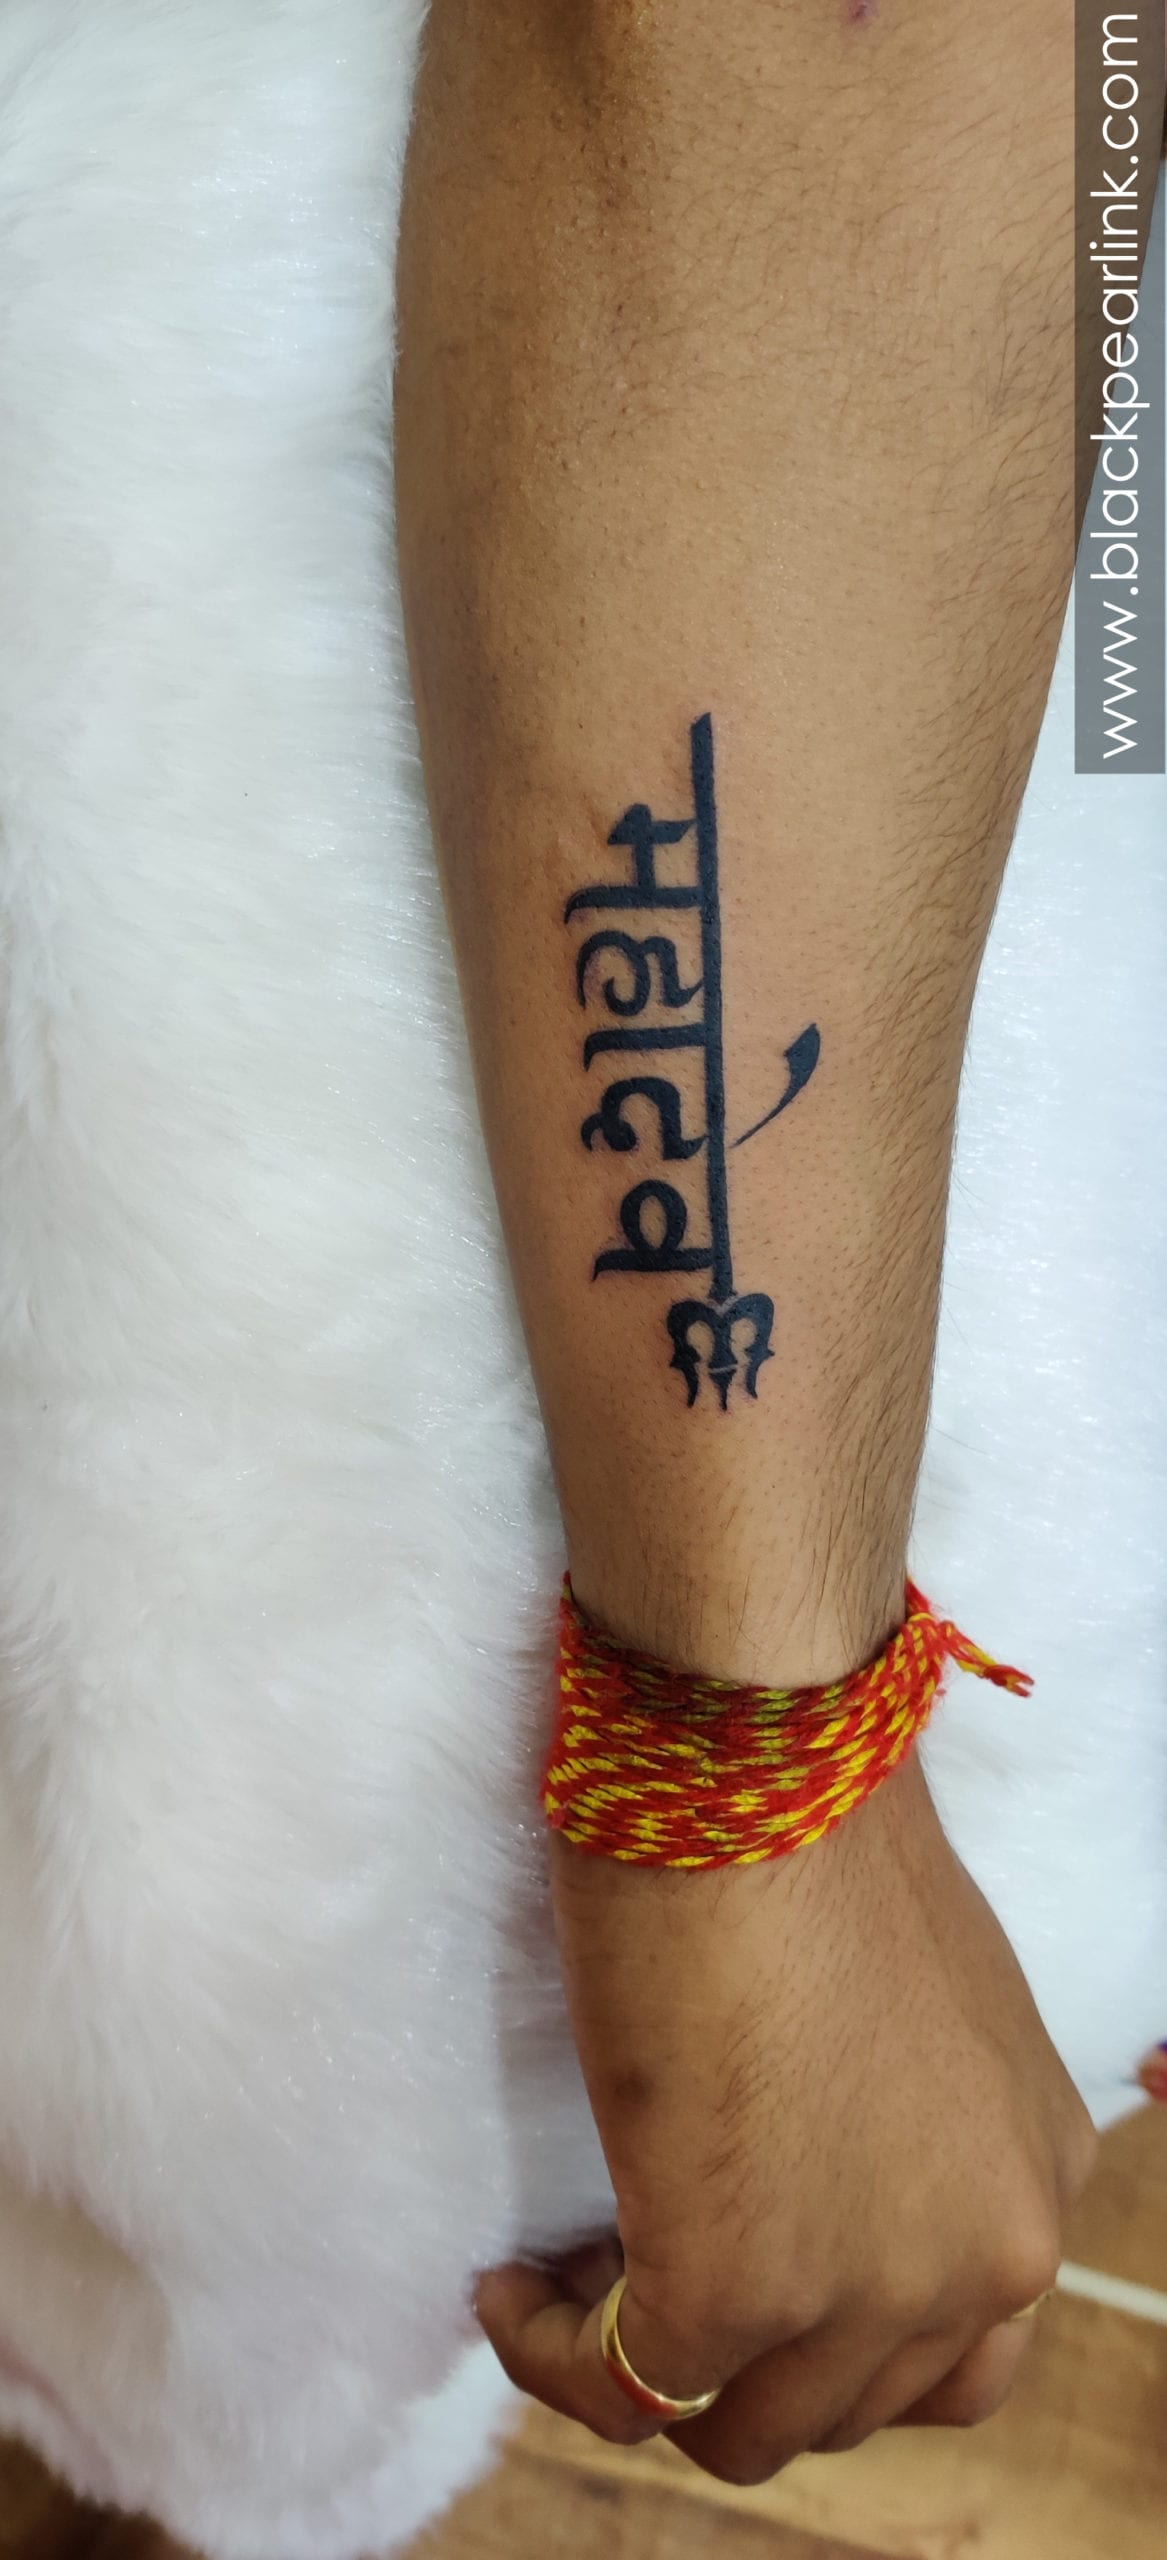 Tattoo uploaded by Samurai Tattoo mehsana  Trishul tattoo Mahadev Trishul  tattoo Mahadev tattoo Shiva tattoo  Tattoodo